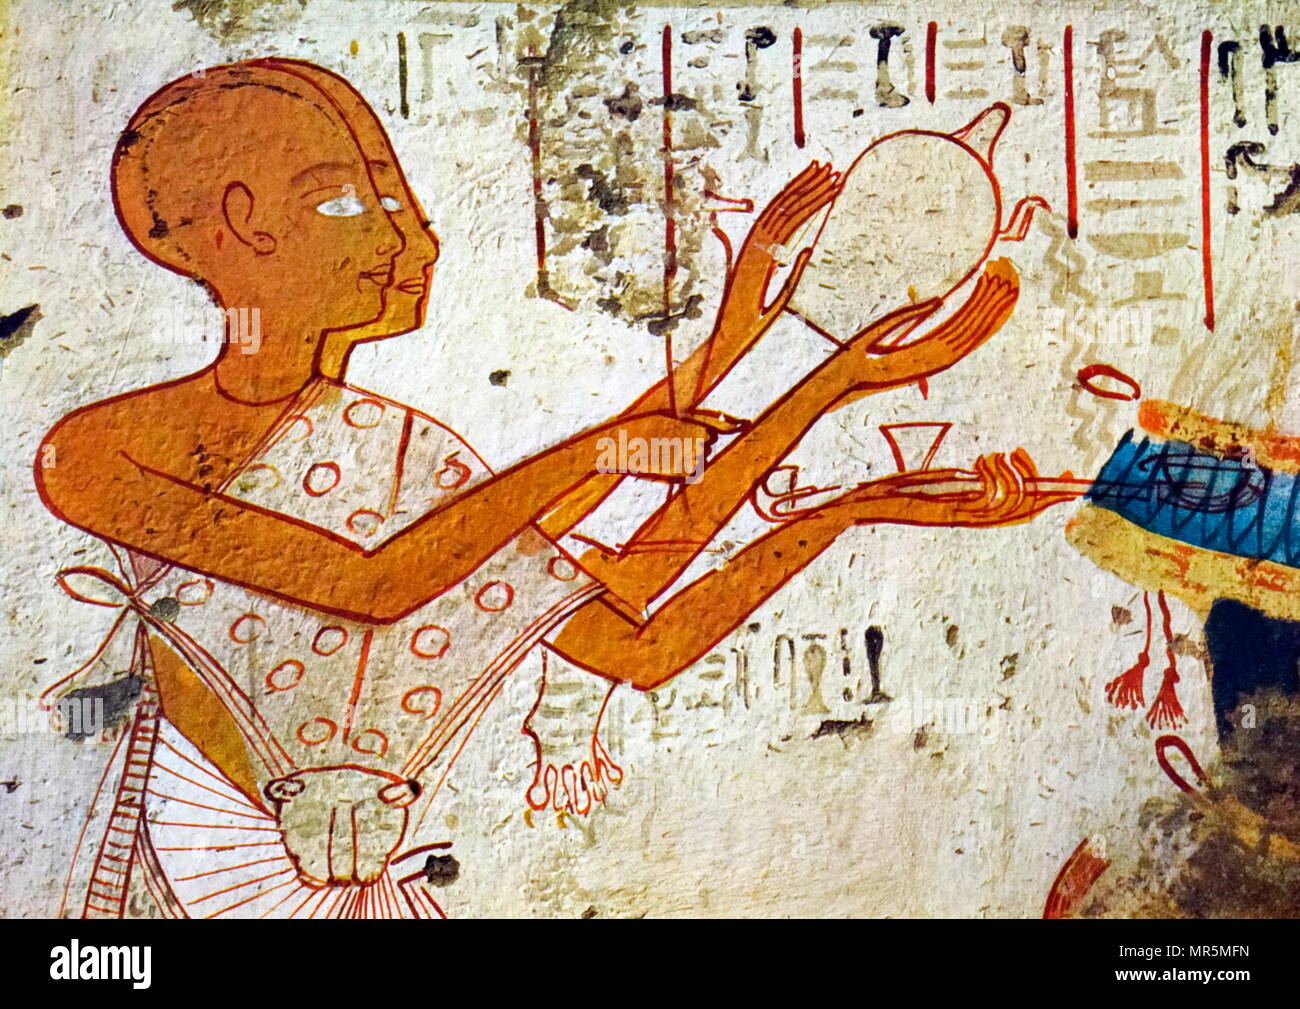 Sacerdote vestito in pelle di leopardo, eseguire riti di purificazione. Pittura murale dall'Theban Tomba di Userhat, il Royal Scribe. Esso fa parte della necropoli tebana, situato sulla sponda occidentale del Nilo di fronte a Luxor. La tomba è il luogo di sepoltura di Userhat un antico egiziano, ufficiale durante la XVIII Dinastia re Amenofi II Foto Stock